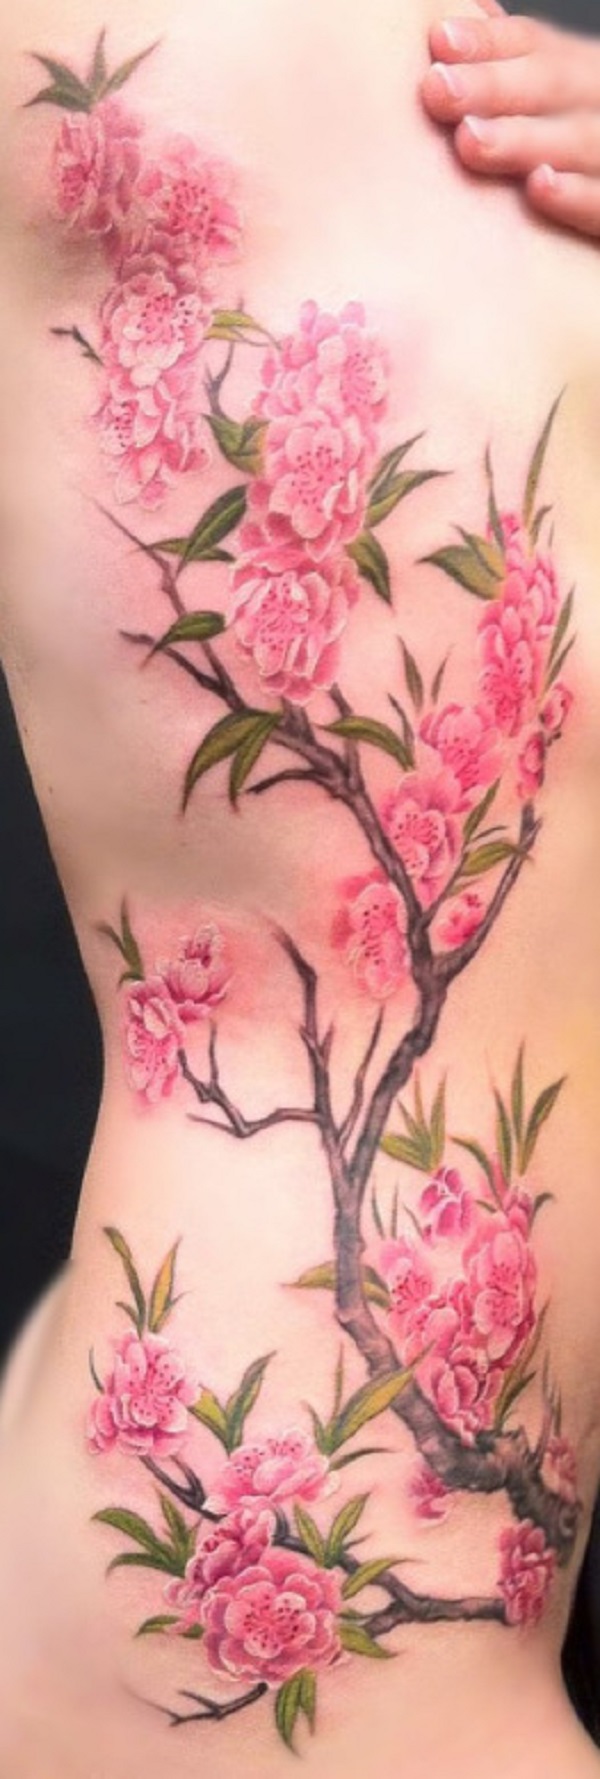 Tatuagens Flor de Cerejeira 14 